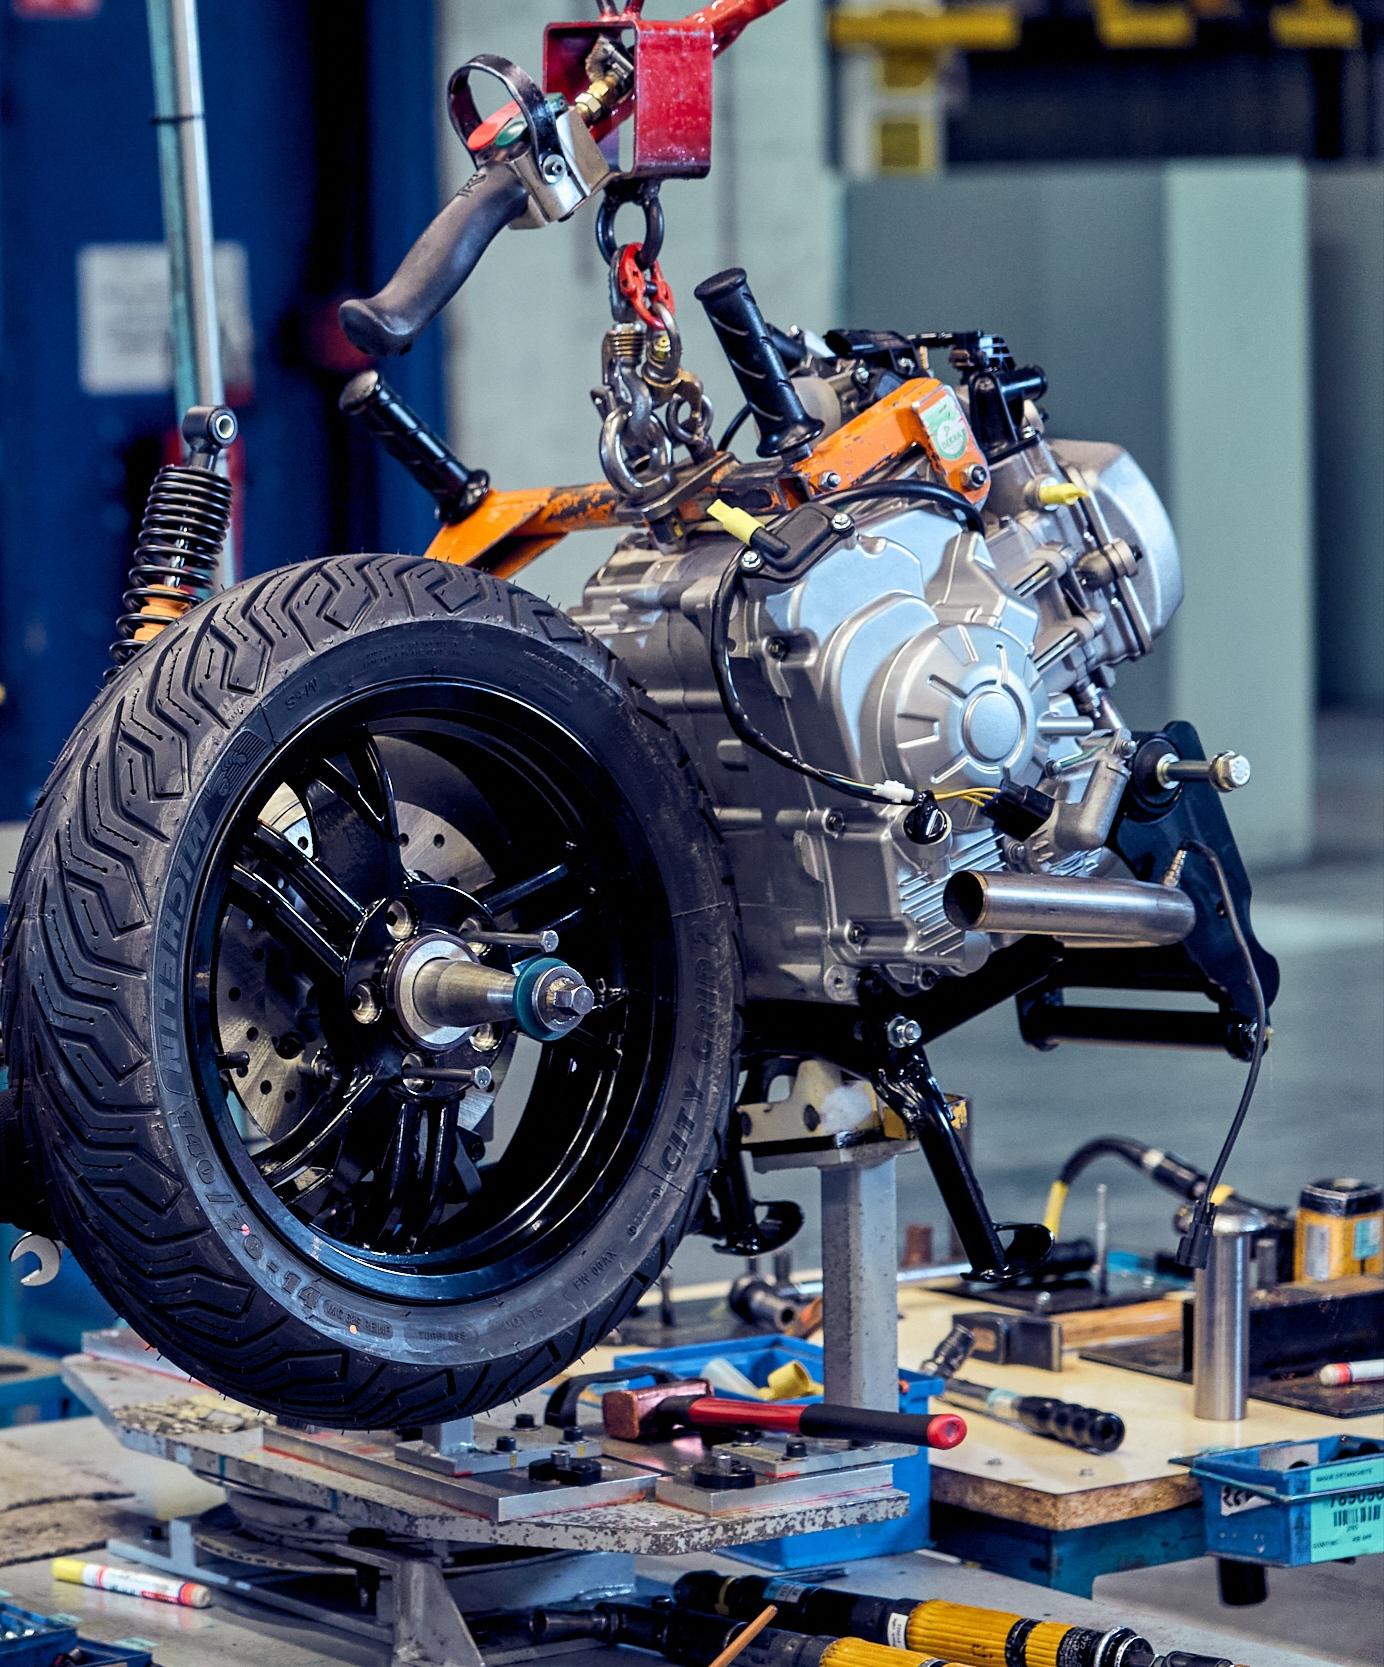 Entretien Moto : remplacement véhicule, réparation pièces, pneus